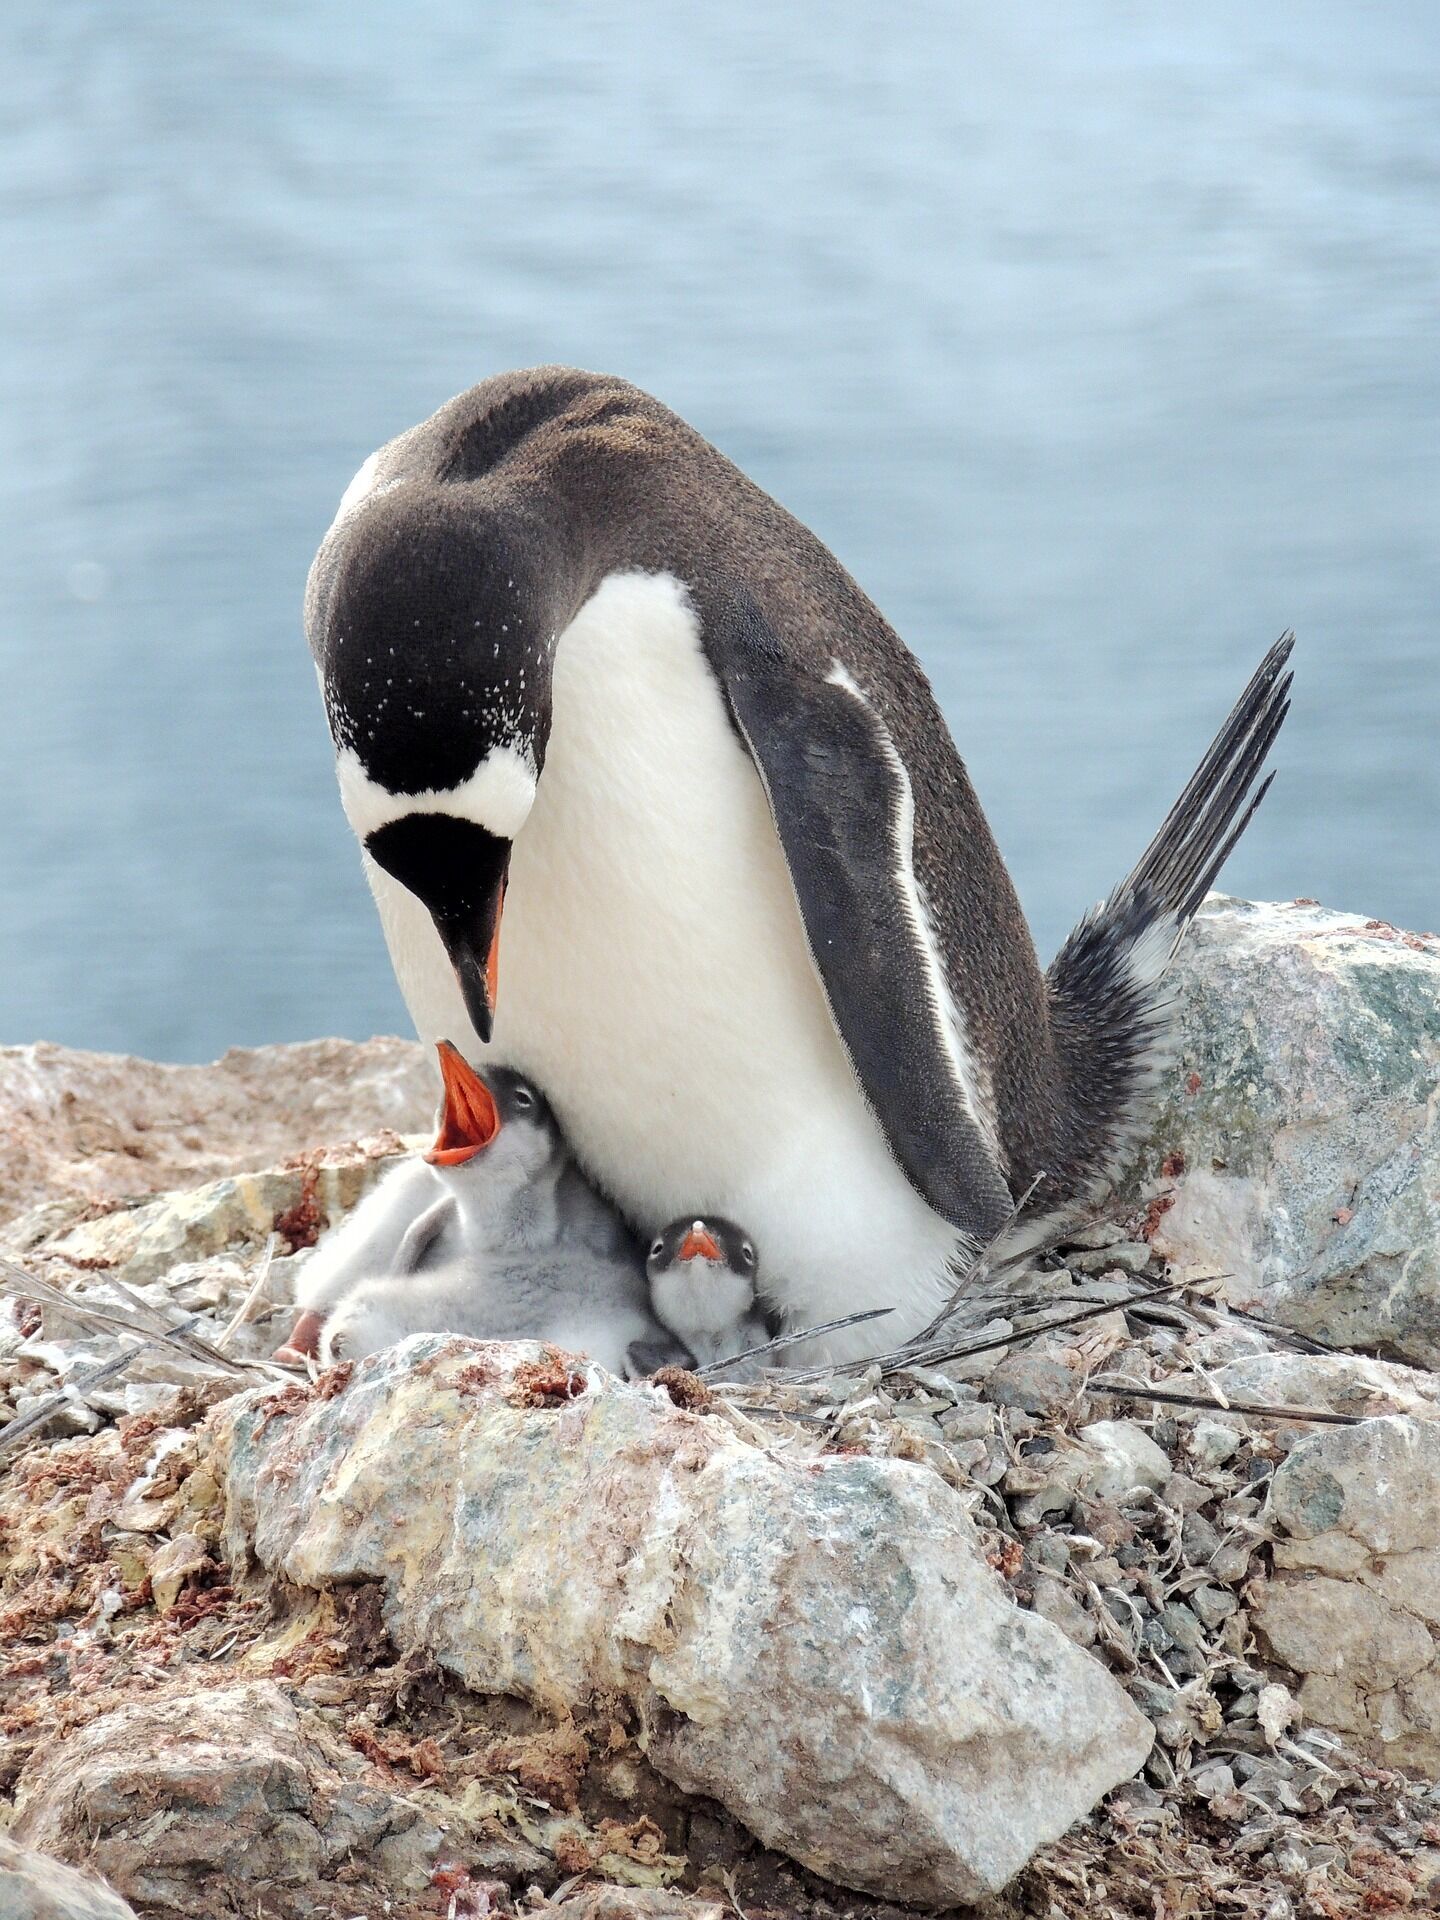 Не літають, але чудово плавають: 5 цікавих фактів про пінгвінів